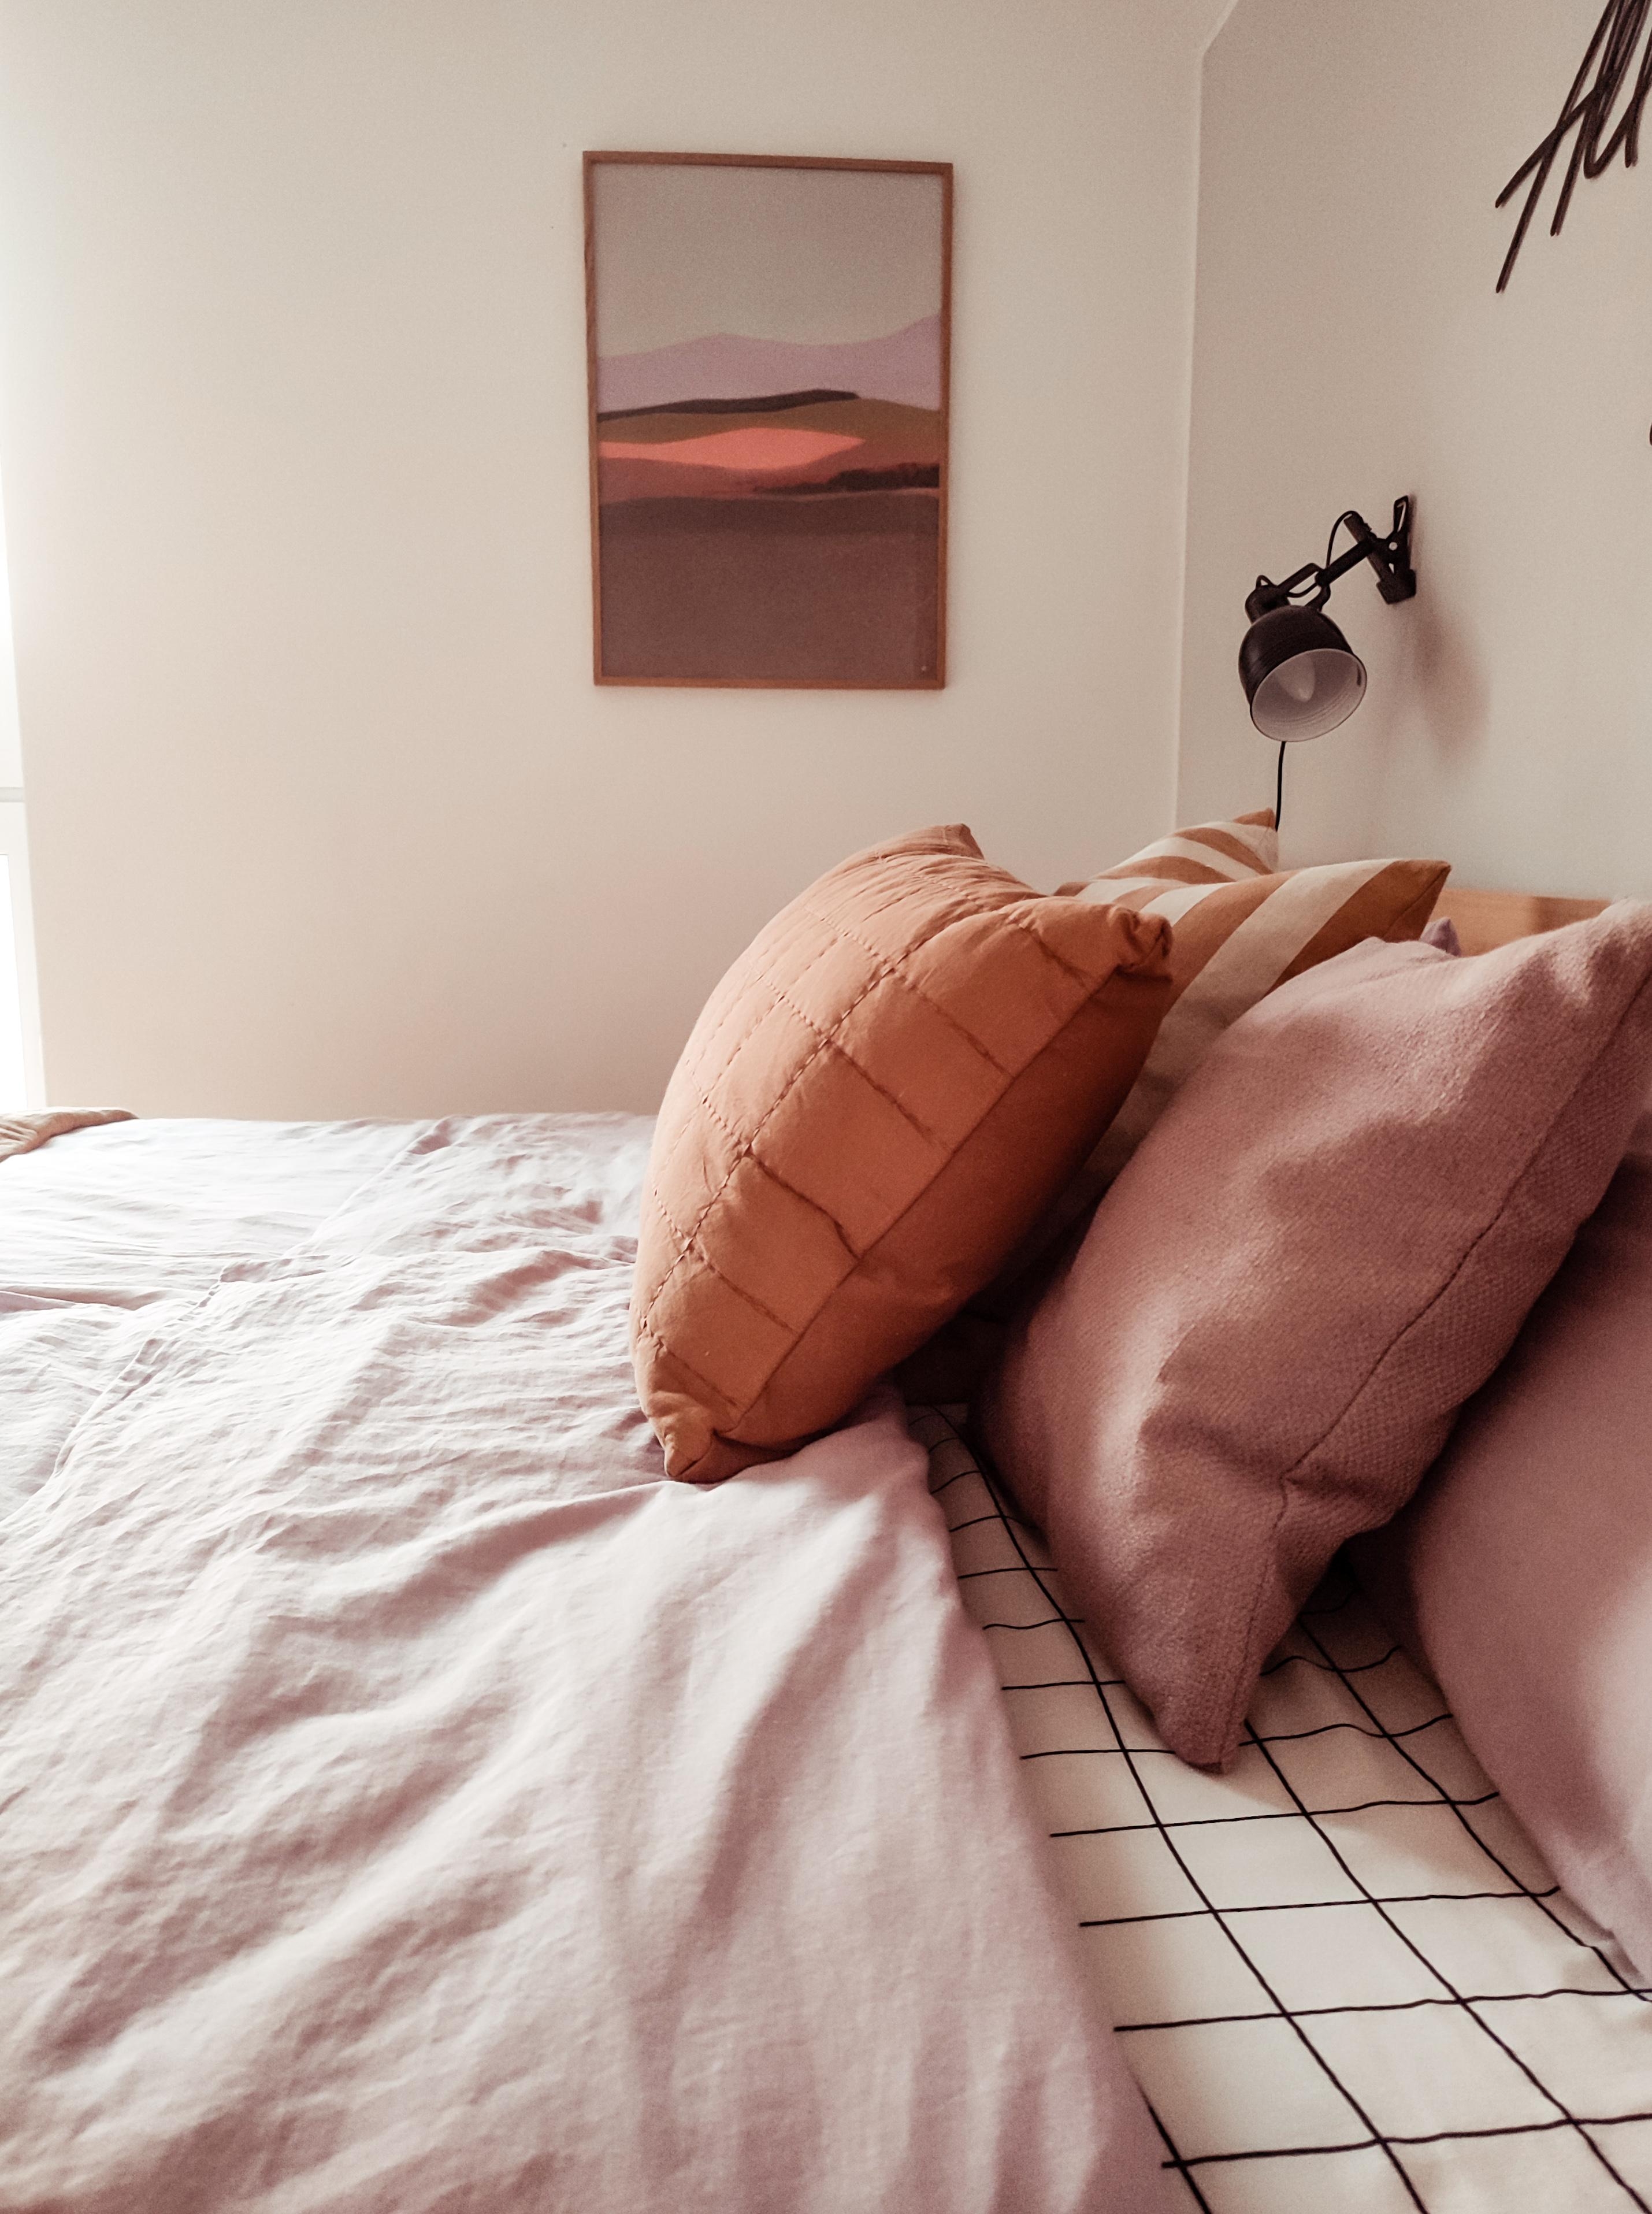 Perfekt Match, Bild und Bettwäsche 💜😉
#schlafzimmer #bedroom #bettwäsche #kissen #bett #bilder #wallart #prints 